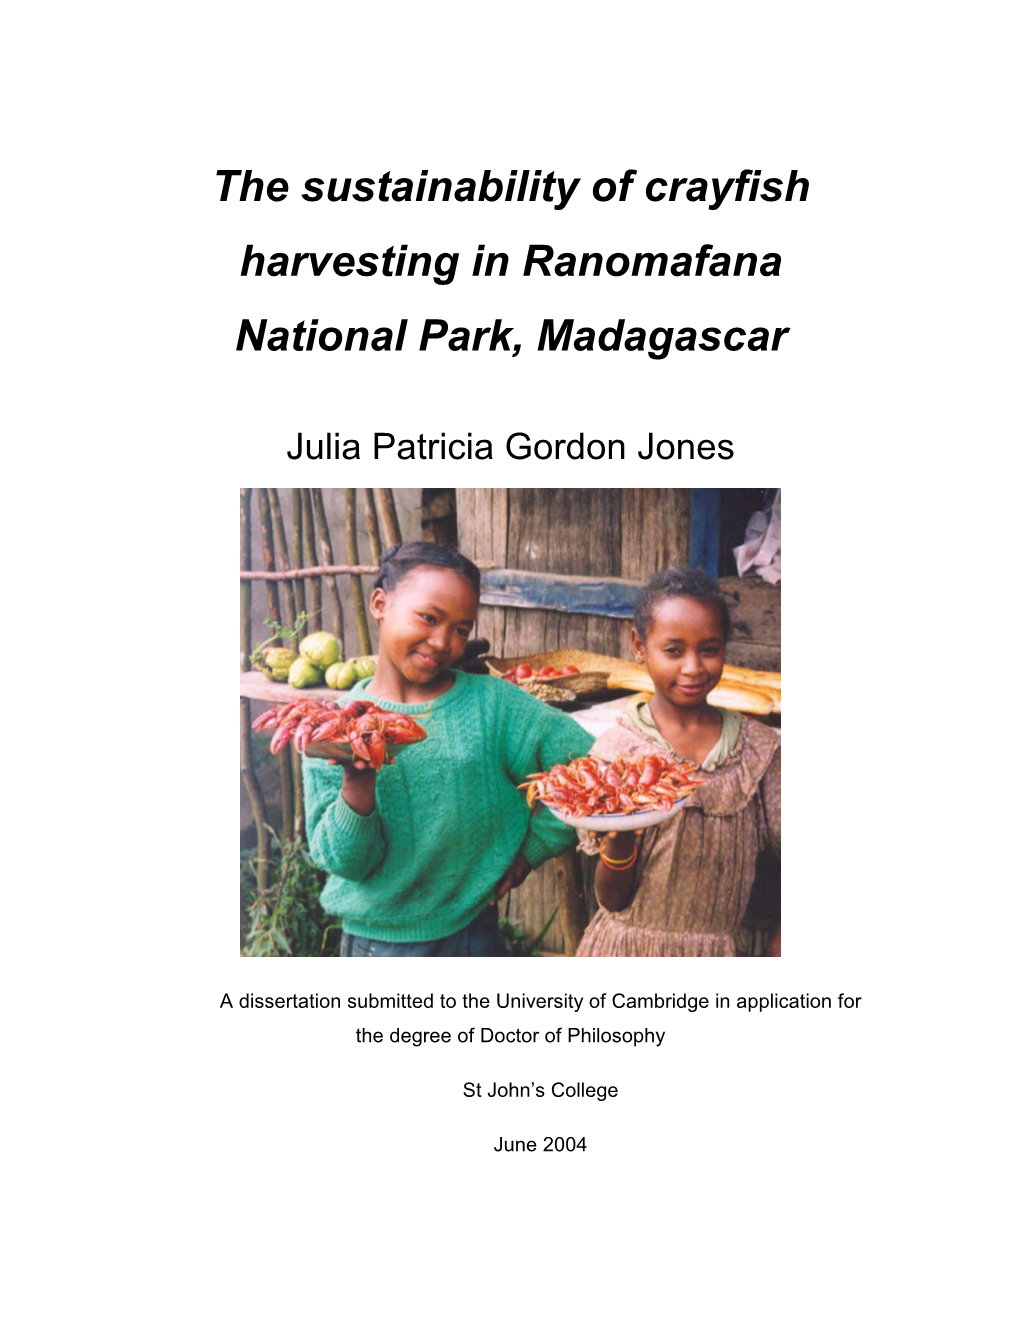 The Sustainability of Crayfish Harvesting in Ranomafana National Park, Madagascar